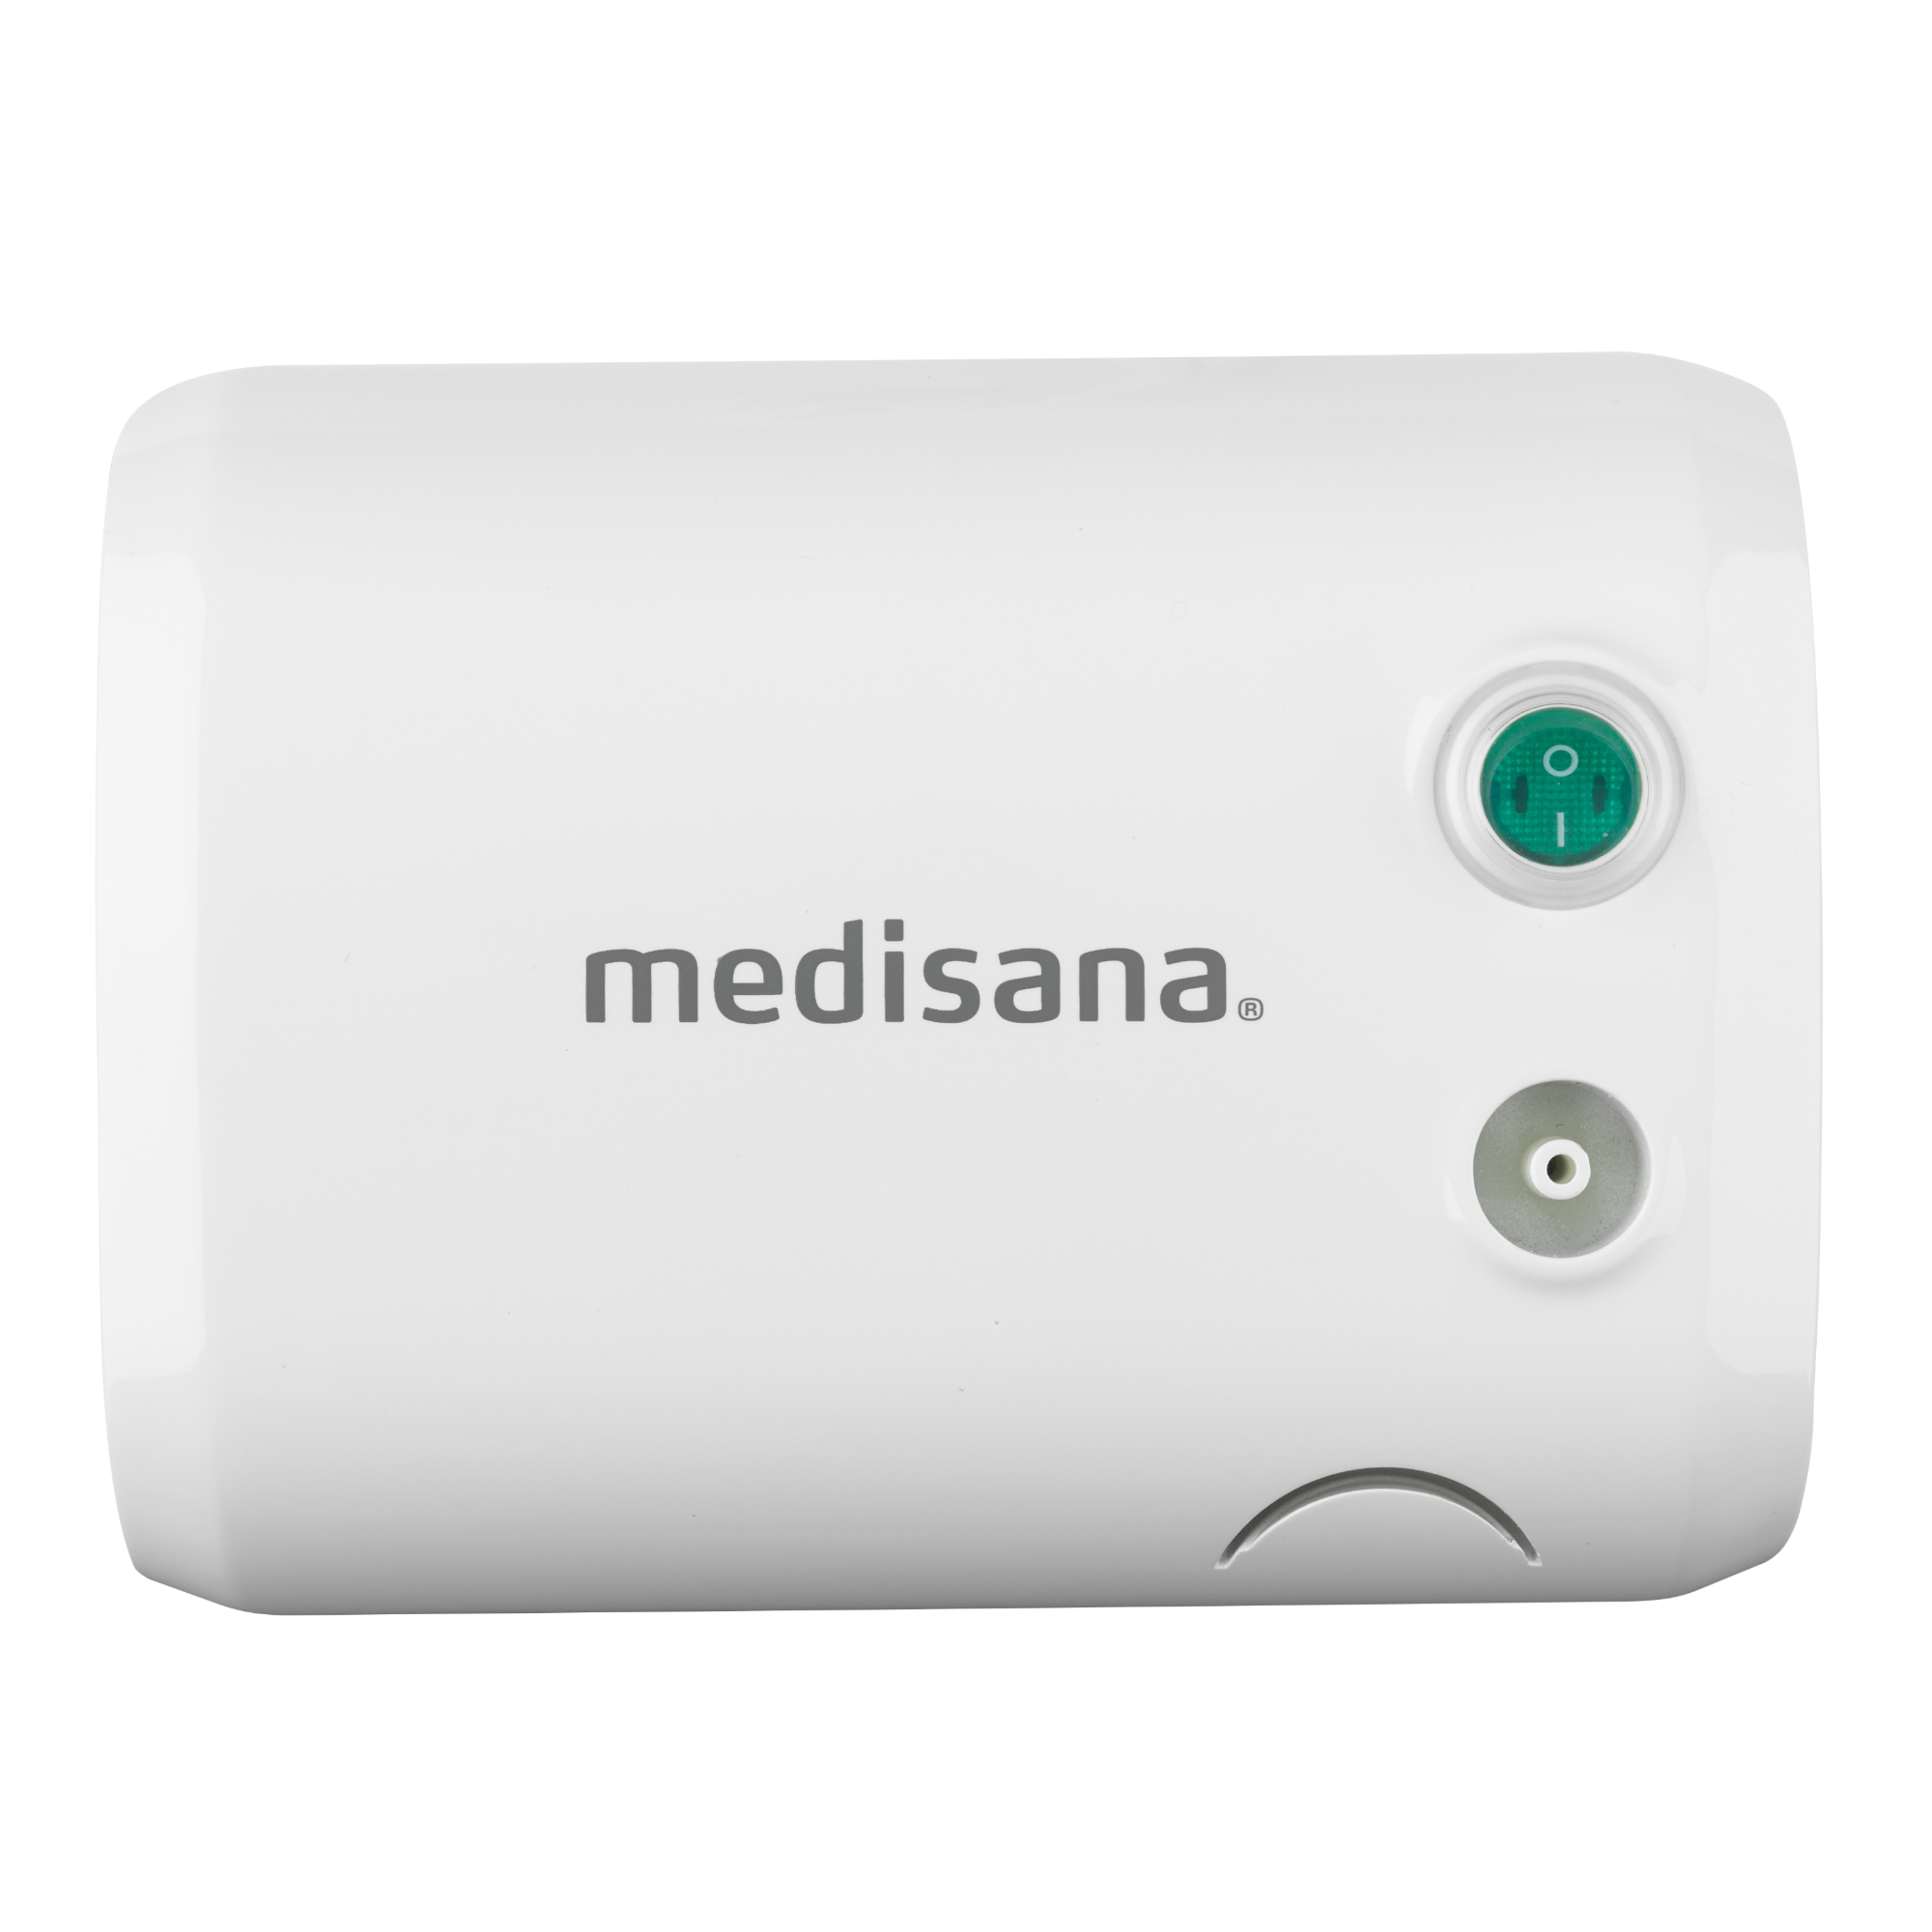 Medisana GmbH 54548 - Schwarz - Weiß - AC - EN 13544-1; EN 60601-1; EN 60601-2; EN 60601-1-6; IEC 60601-1-11 - 140 mm - 180 mm - 94 mm